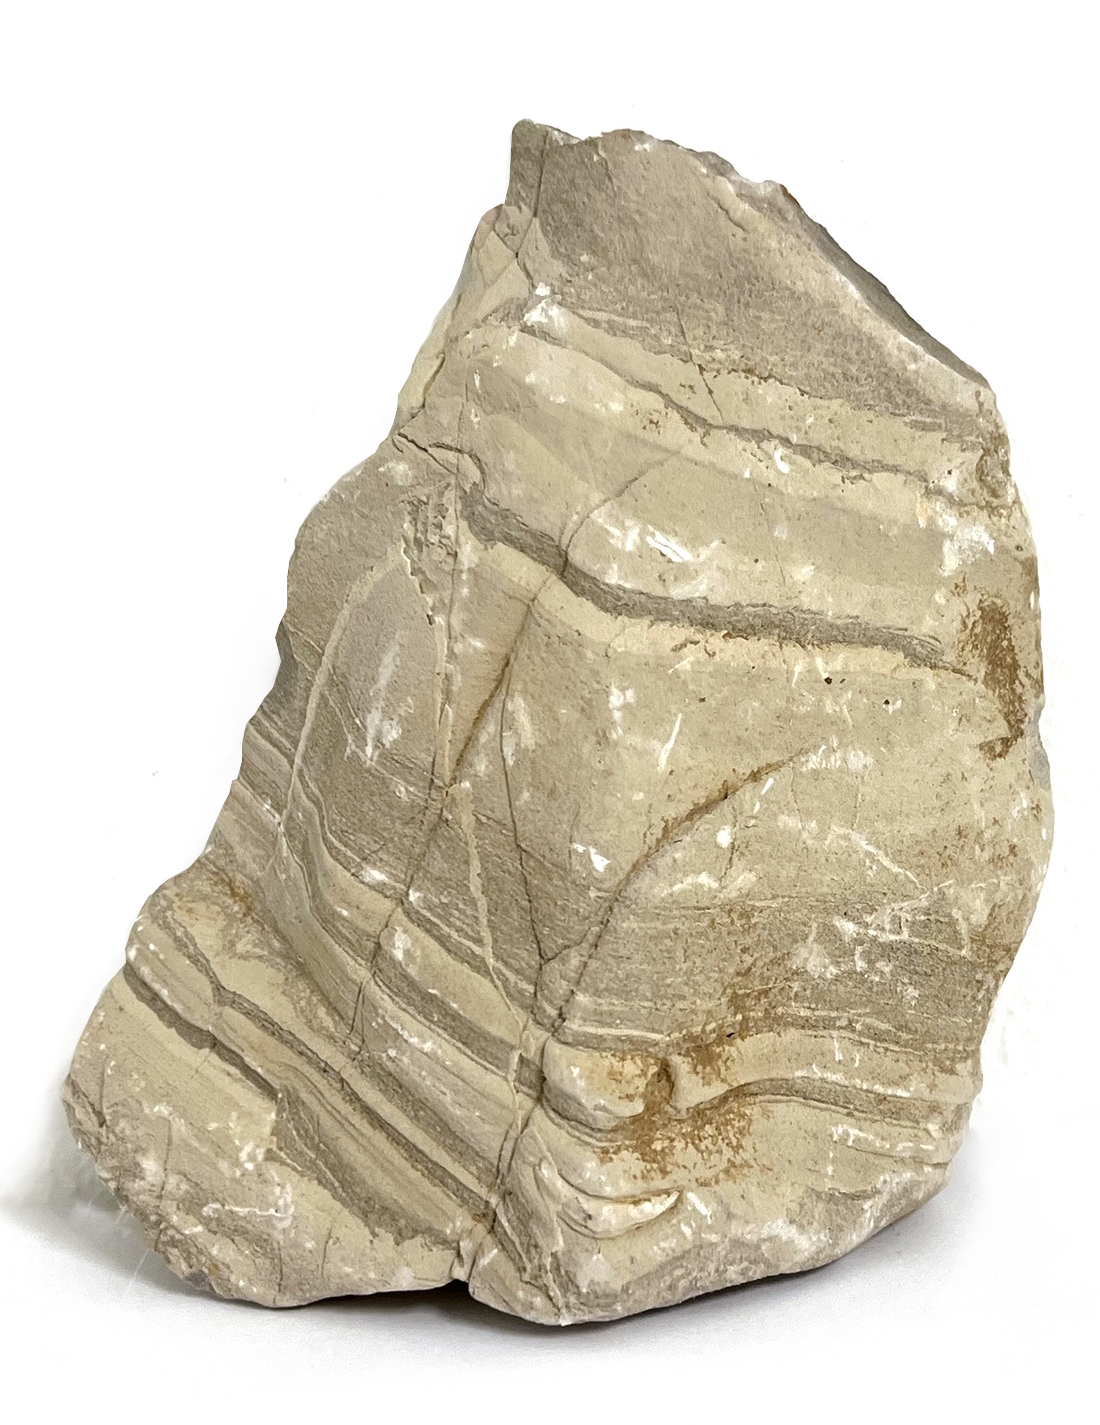 MACENAUER Kámen Sandwüstenstein M (Gobi Rock), 2,3-2,7 kg